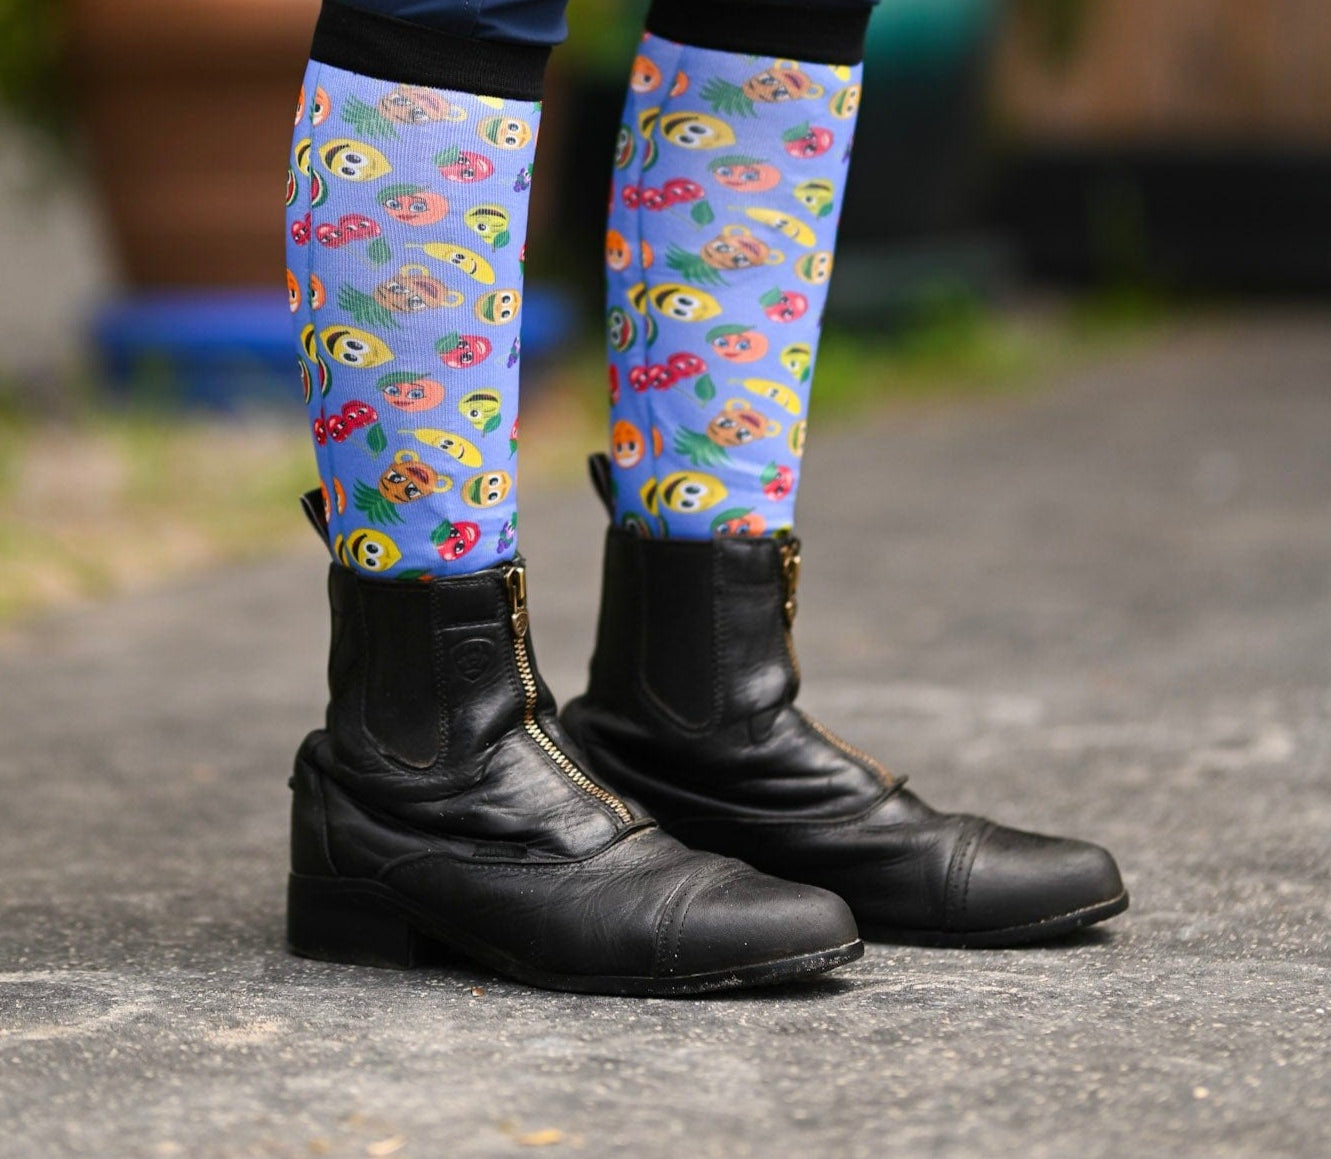 D&S LIMITED EDITION Limited Edition Limited Cartoon Fruit Socks equestrian boot socks boot socks thin socks riding socks pattern socks tall socks funny socks knee high socks horse socks horse show socks